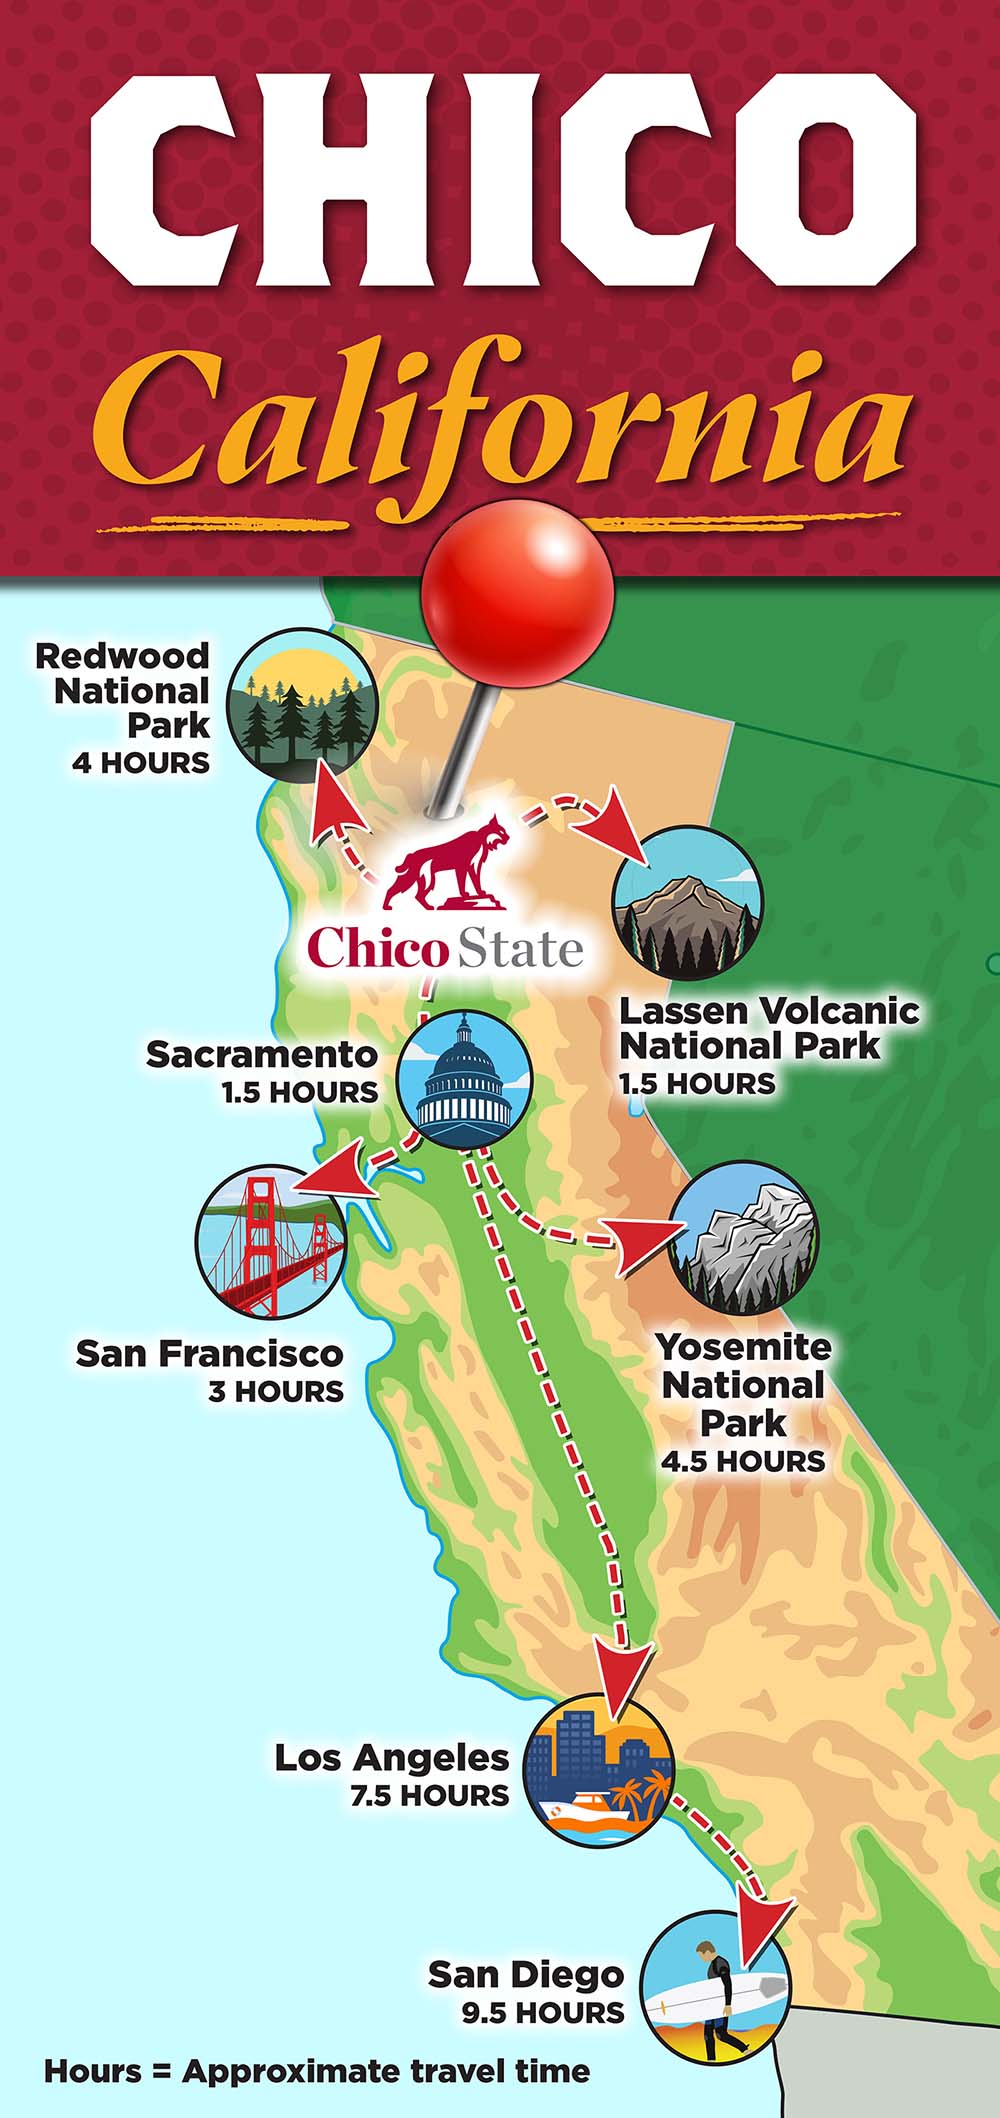 Chico State's location in California